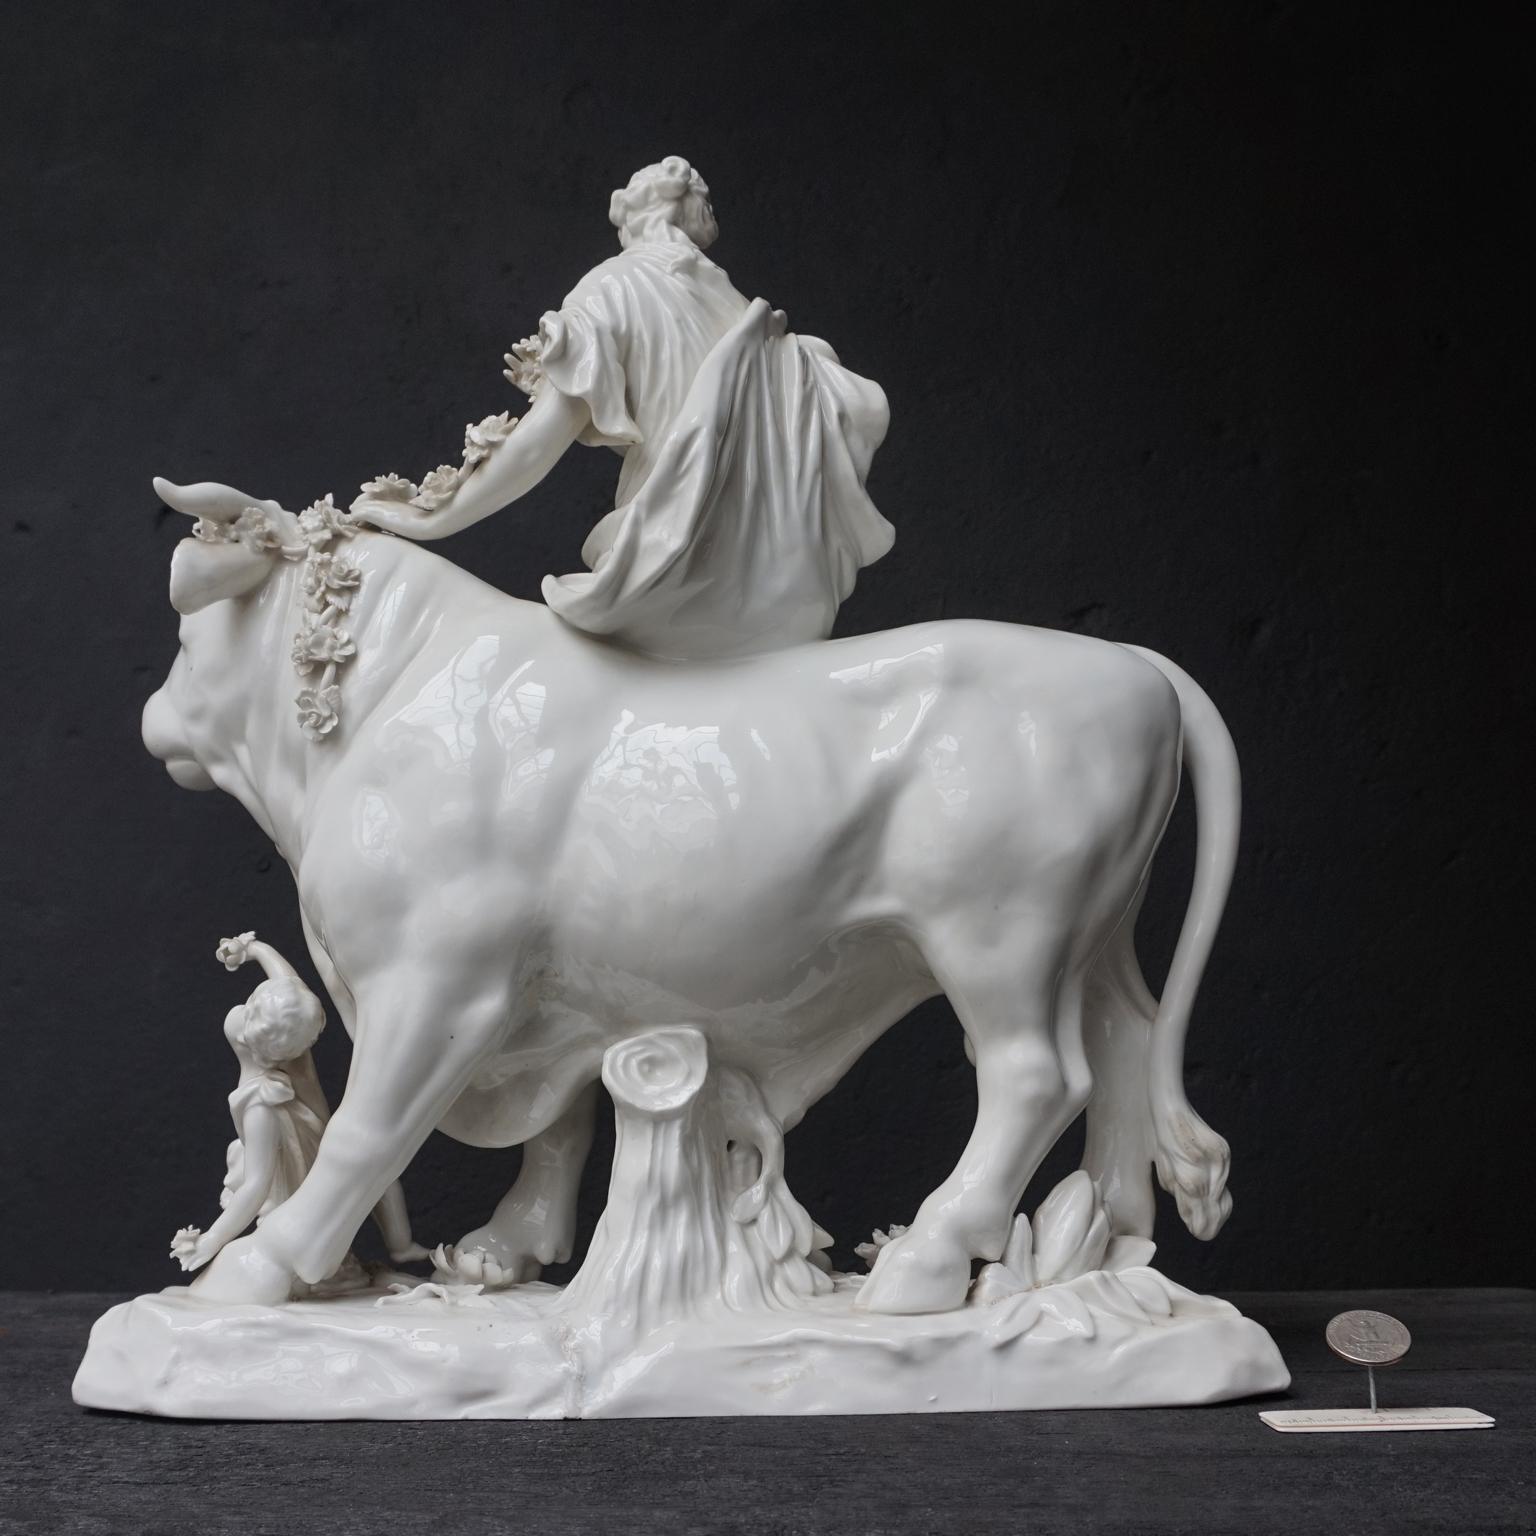 Vernissé Porcelaine figurative viennoise du XVIIIe siècle Groupe de la mythologie grecque composé d'Europa et de Zeus en vente